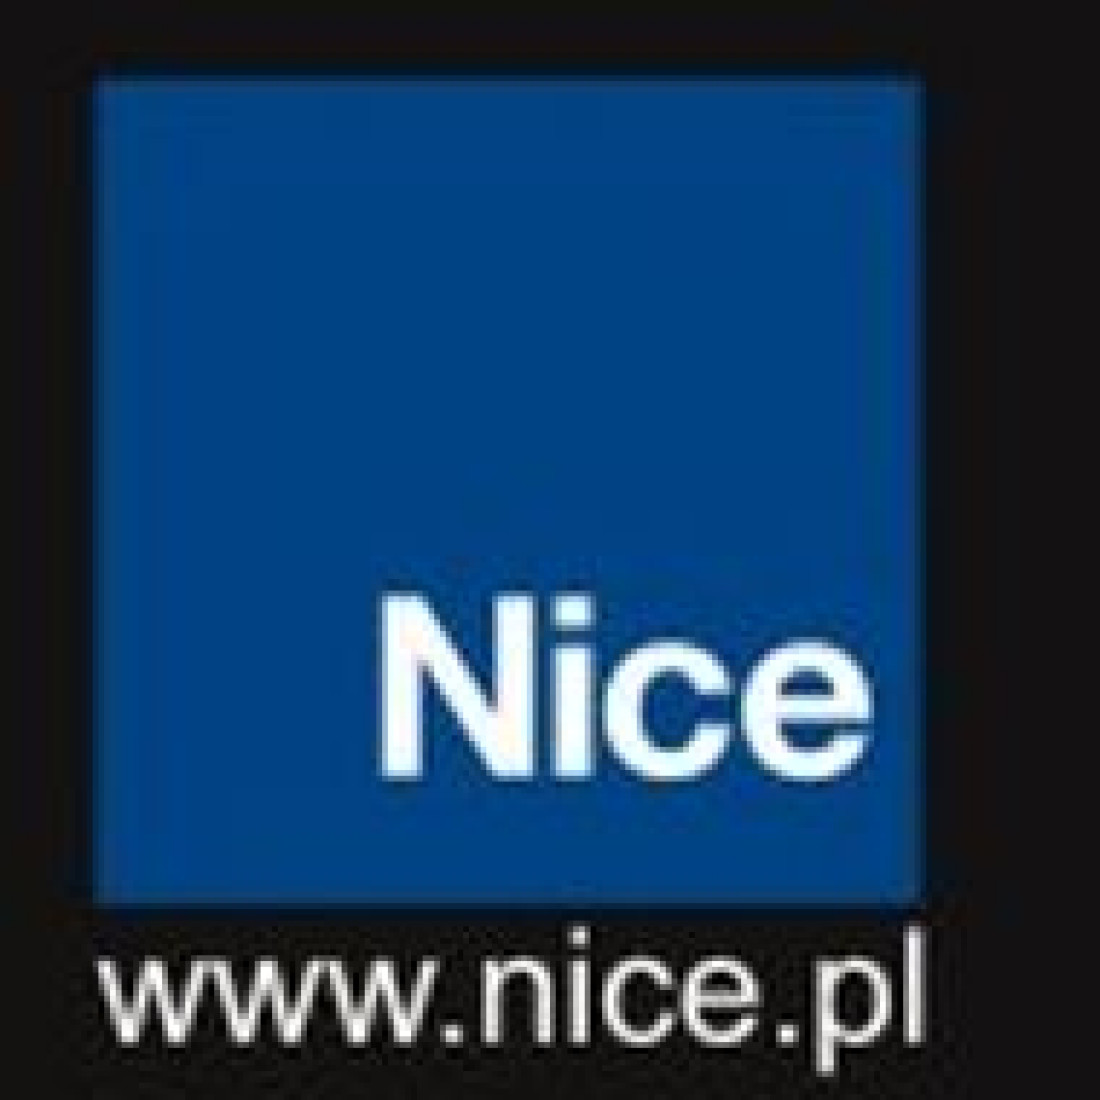 5 lat gwarancji Nice